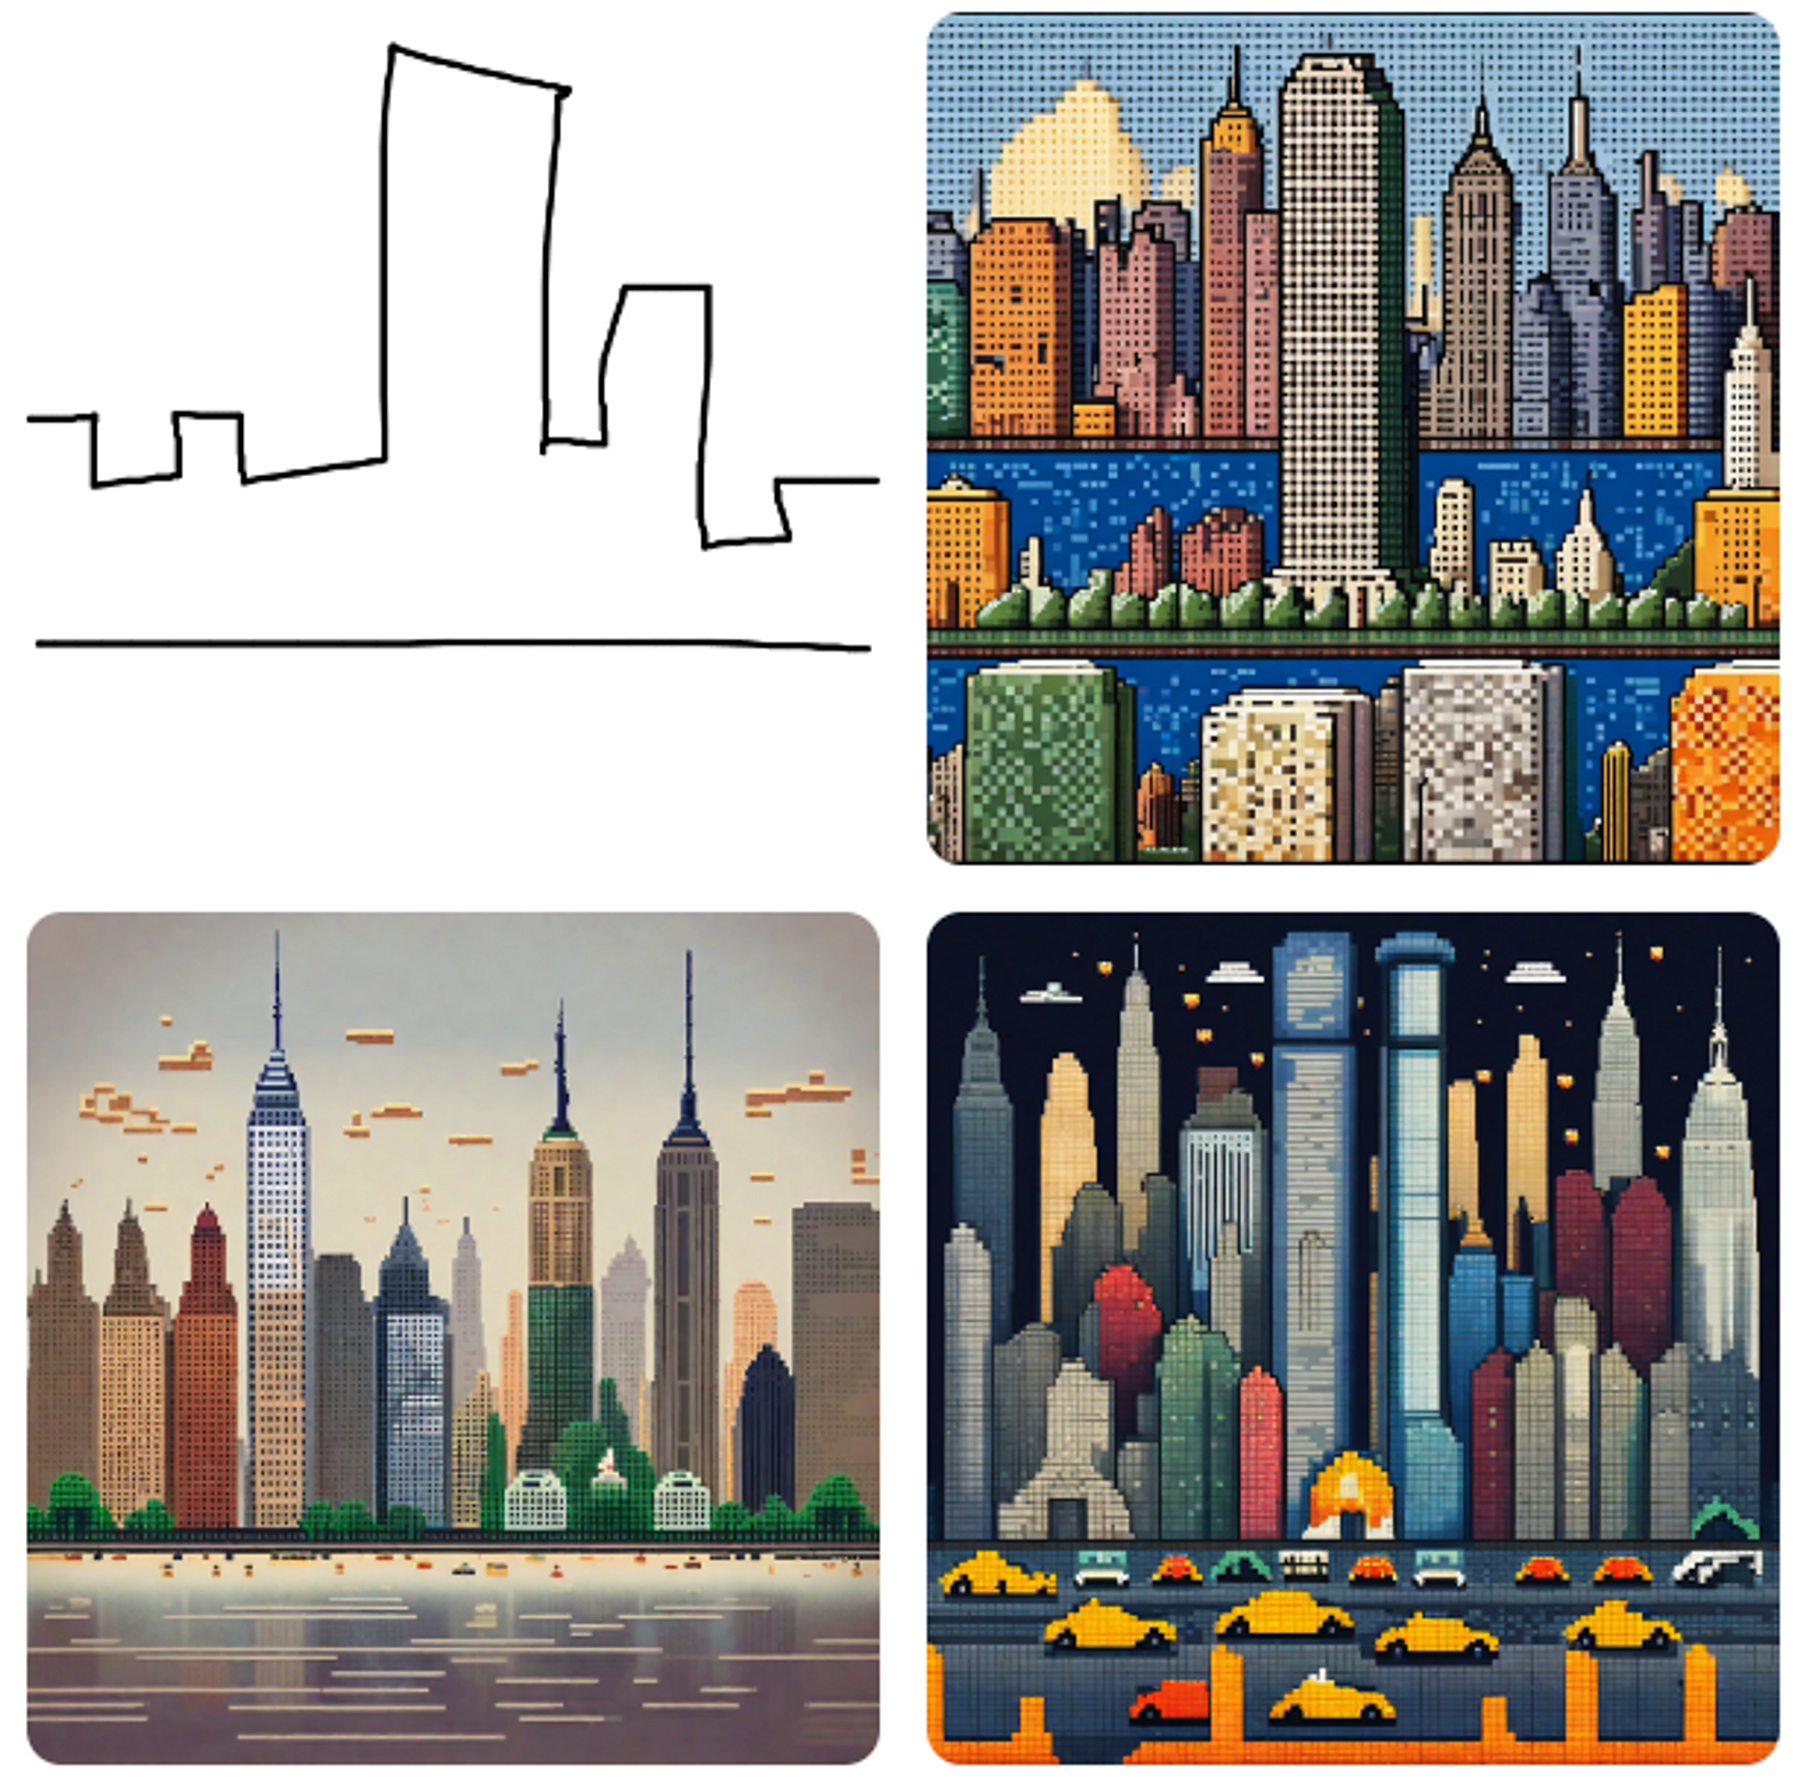 New York city en style Pixel Art